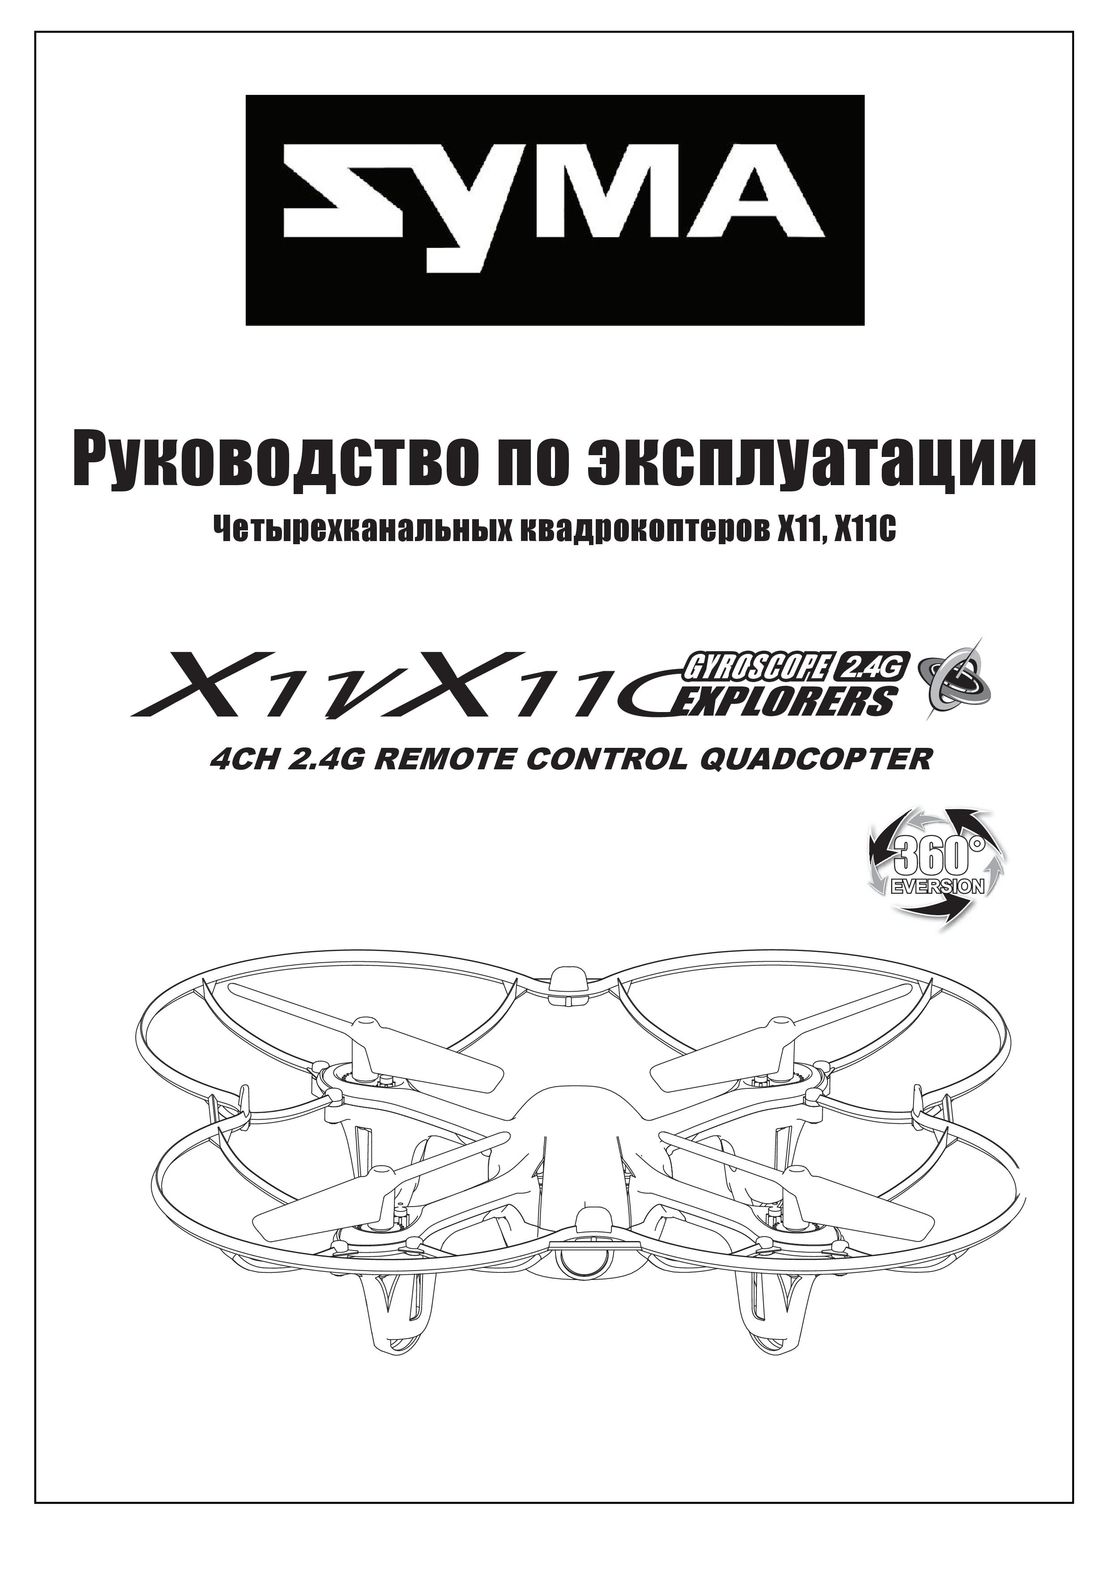 Syma X11 X11C инструкция на русском